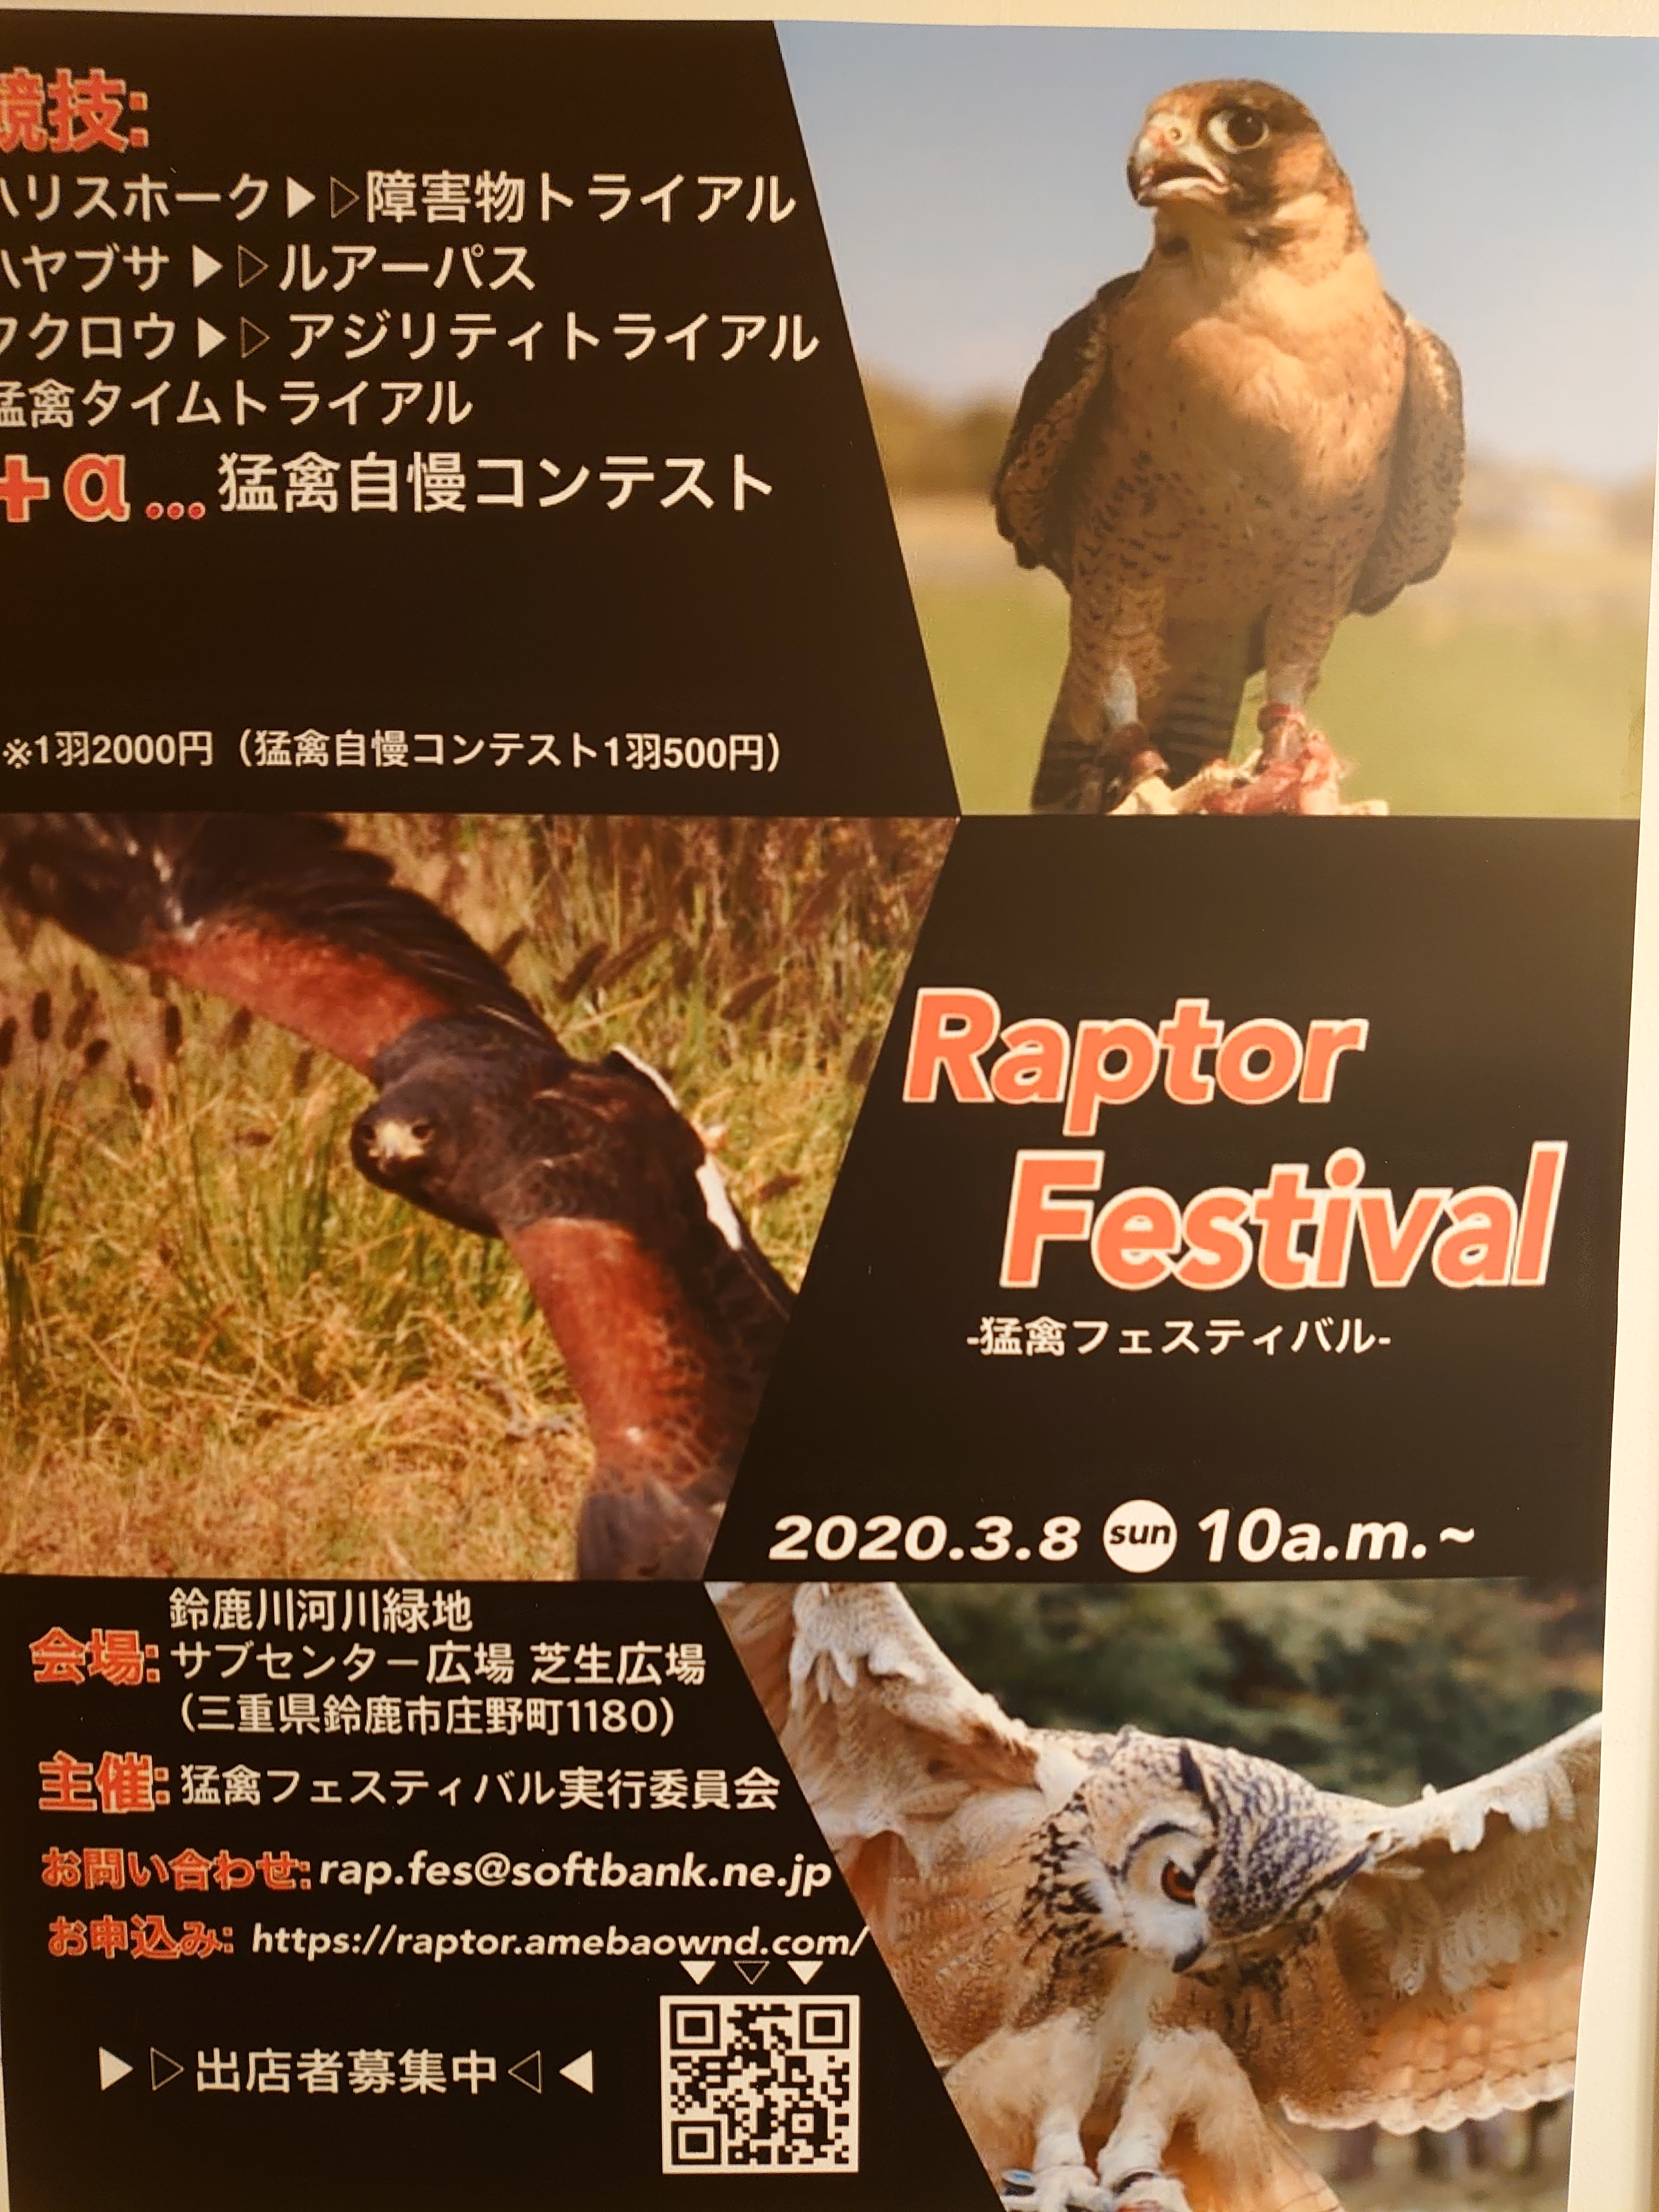 【直行バス】Raptor Festival -猛禽フェスティバル-